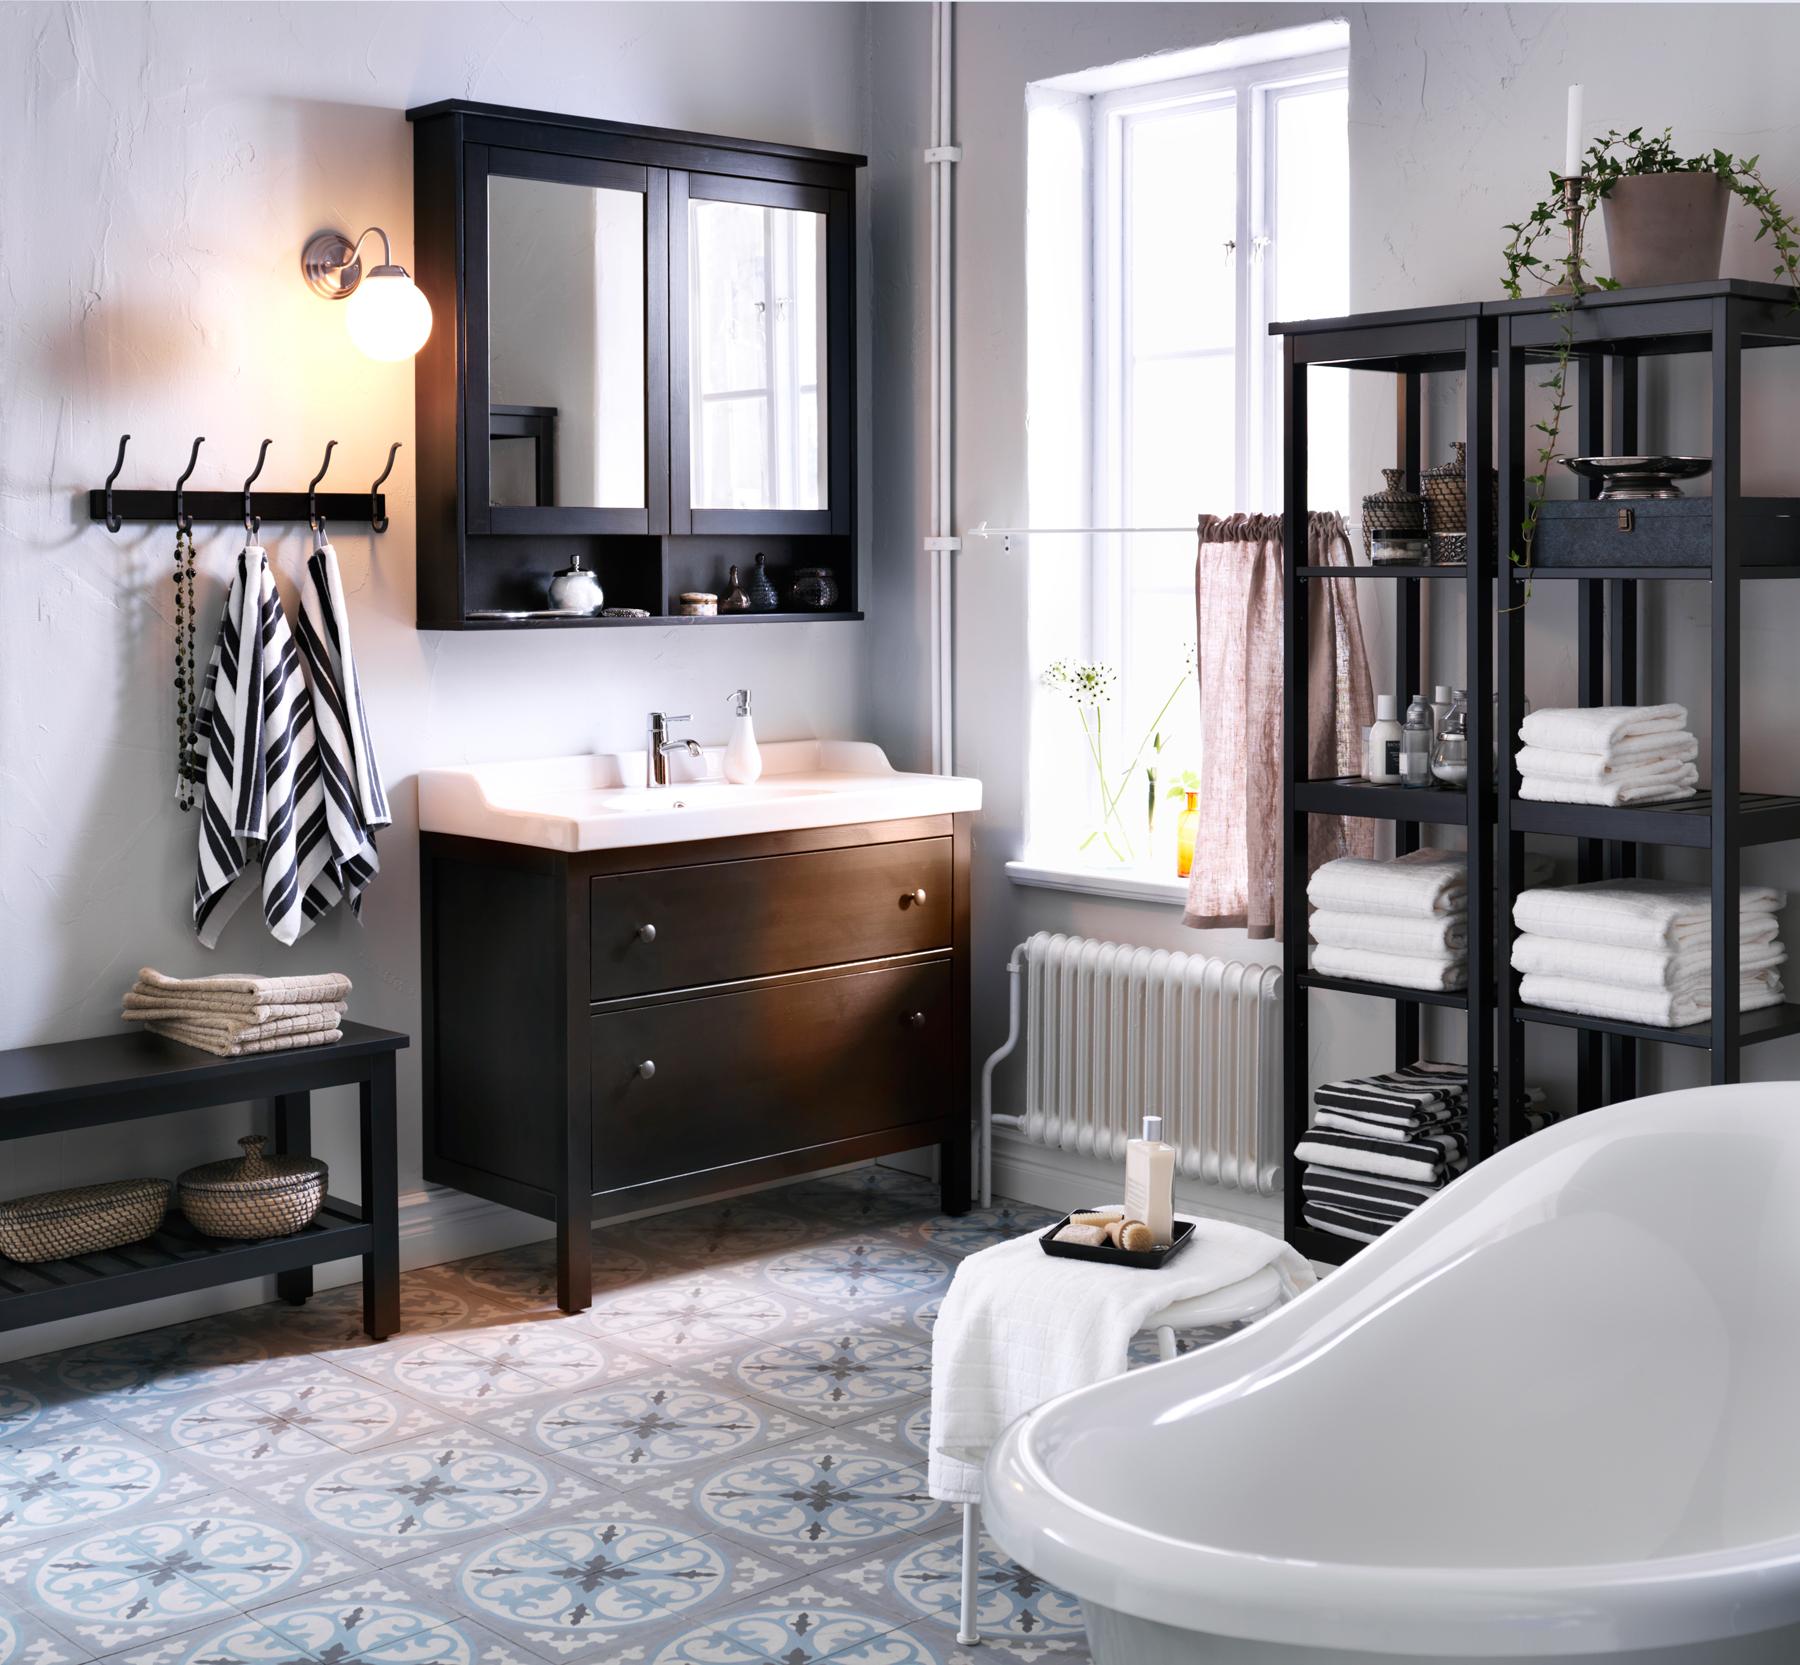 Dunkelbraun gebeizter Waschbeckenschrank und freistehende Badewanne #mosaikfliesen #ikea #holzregal #spiegelschrank ©Inter IKEA Systems B.V